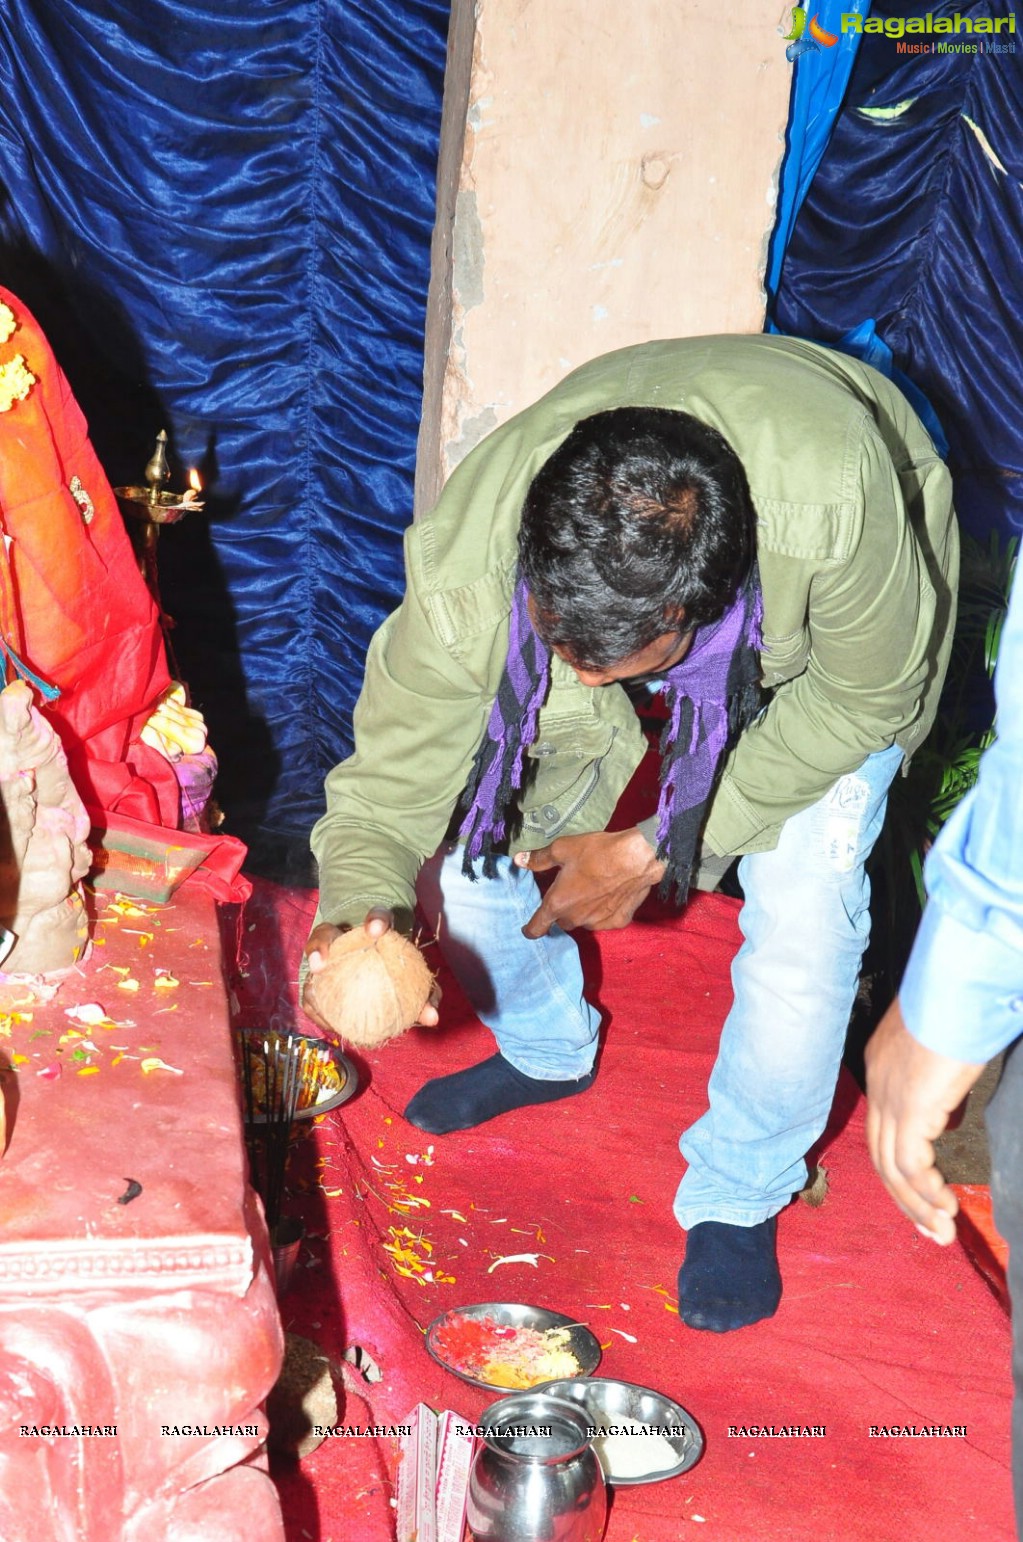 Ram-Lakshman donates 1 Lakh to Sphoorthi Jyothi Foundation